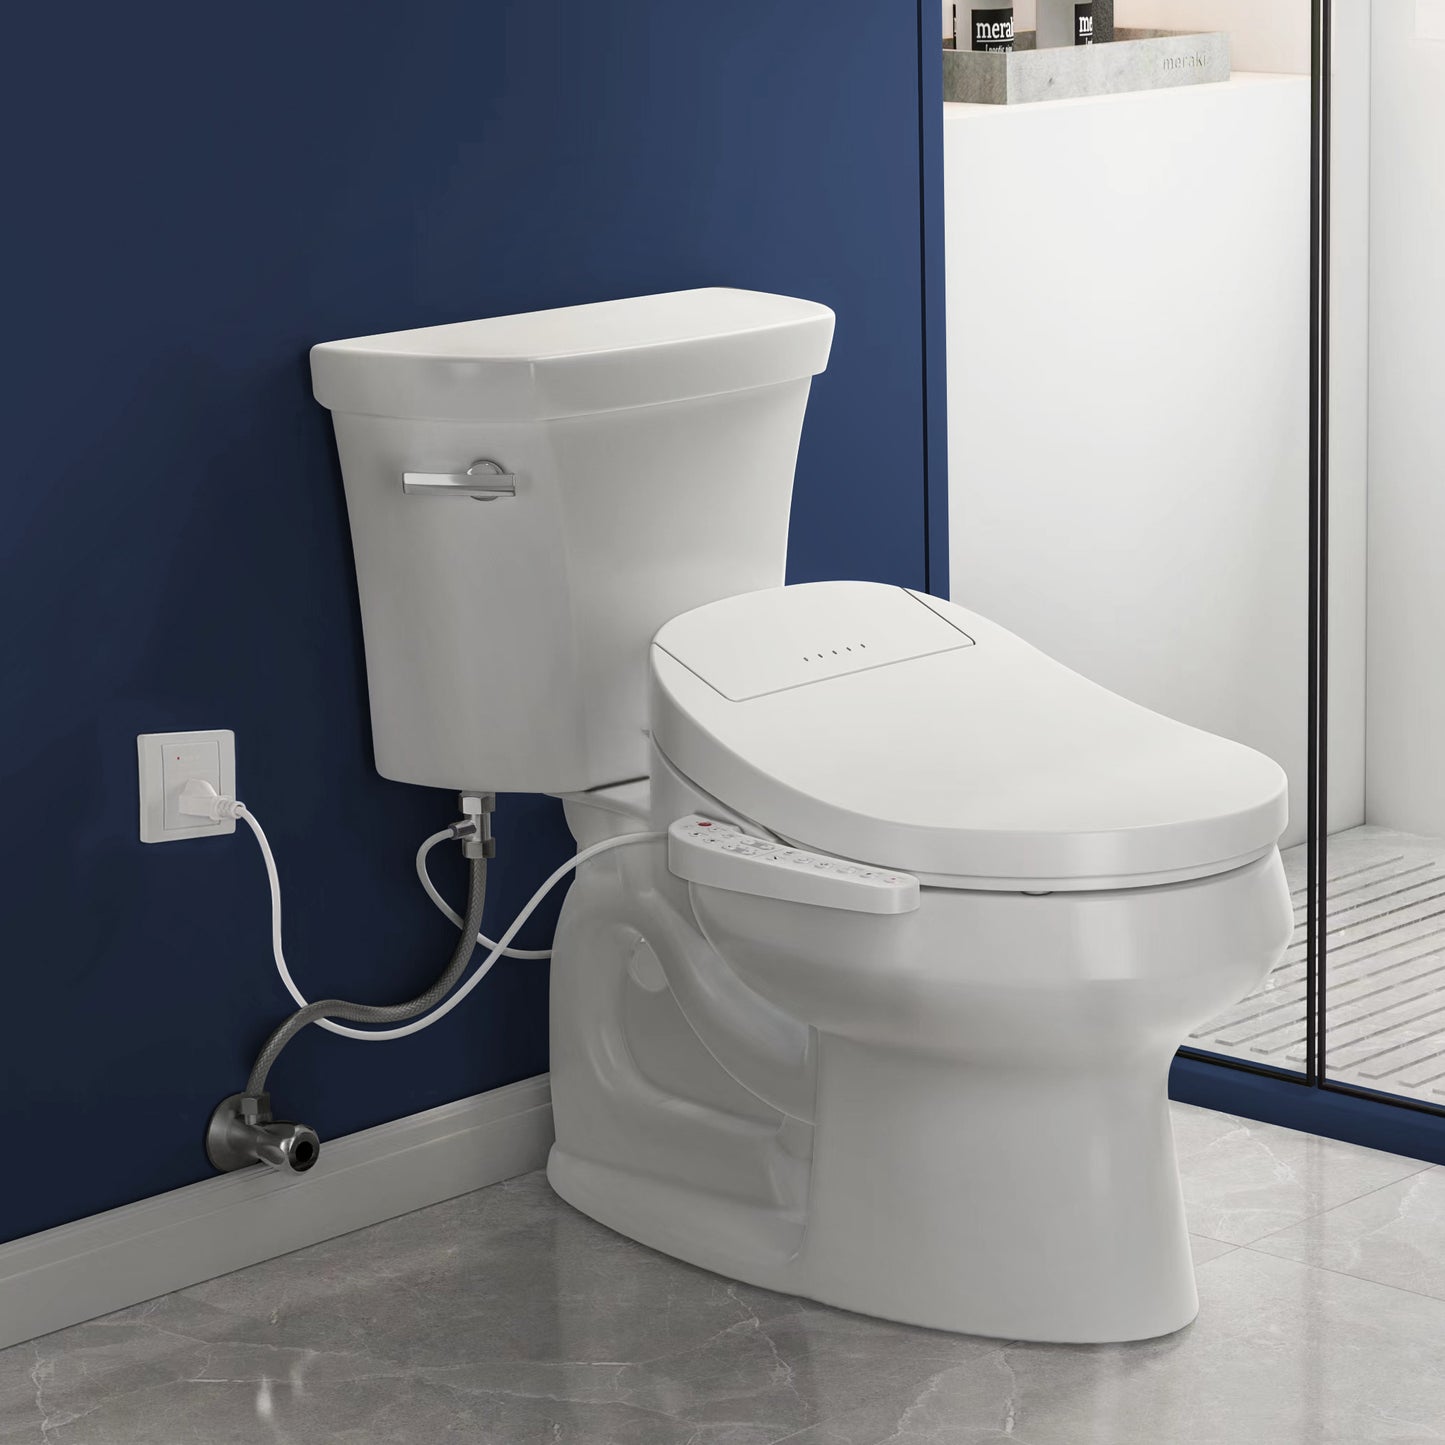 ZMJH ZMA201 Elongated Smart Toilet Seat